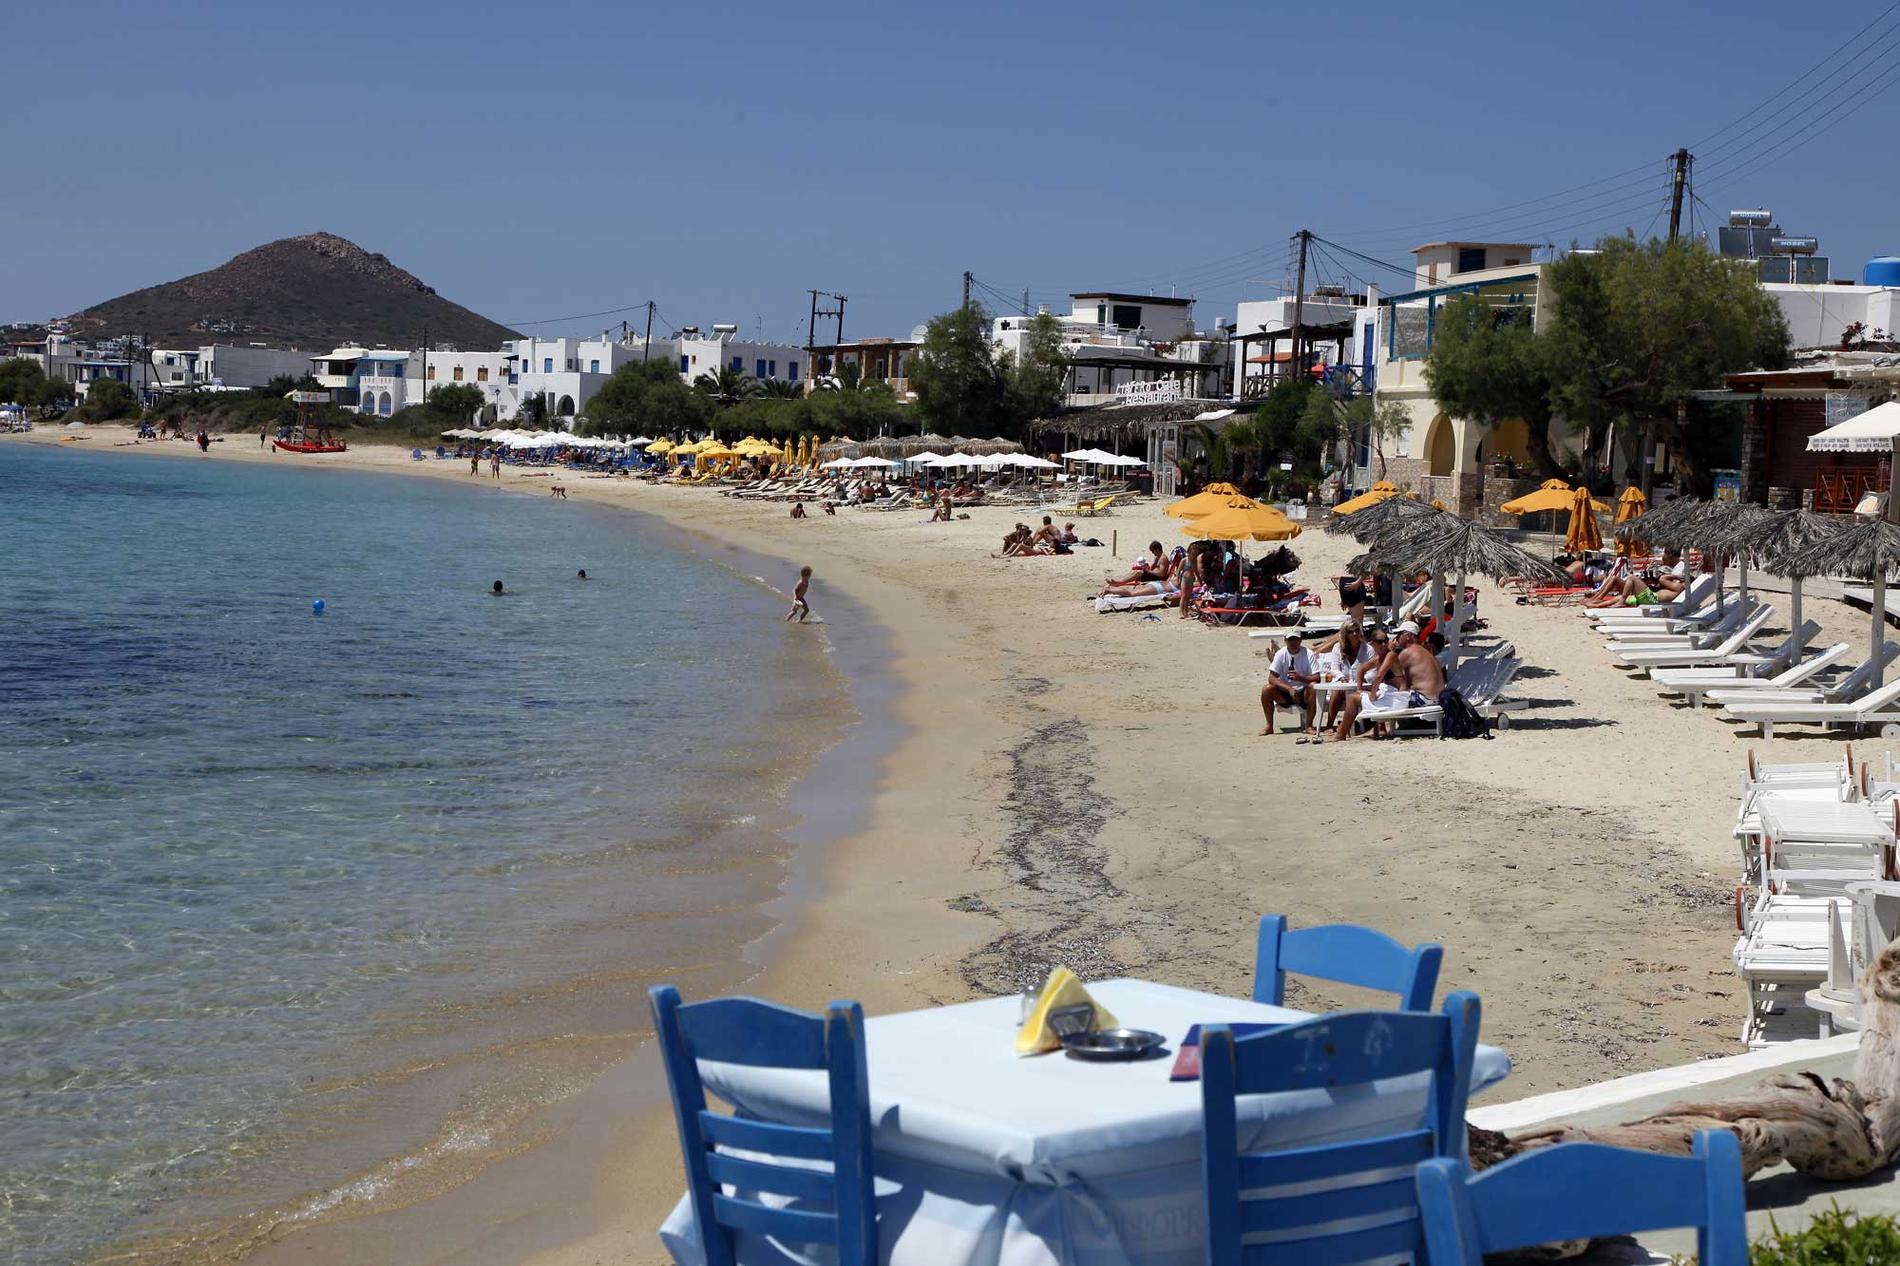 Det kan vara bra att ha lite extra kontanter med sig till Grekland i sommar pga det osäkra ekonomiska läget i landet, menar experter. Bilden är tagen på ön Naxos.